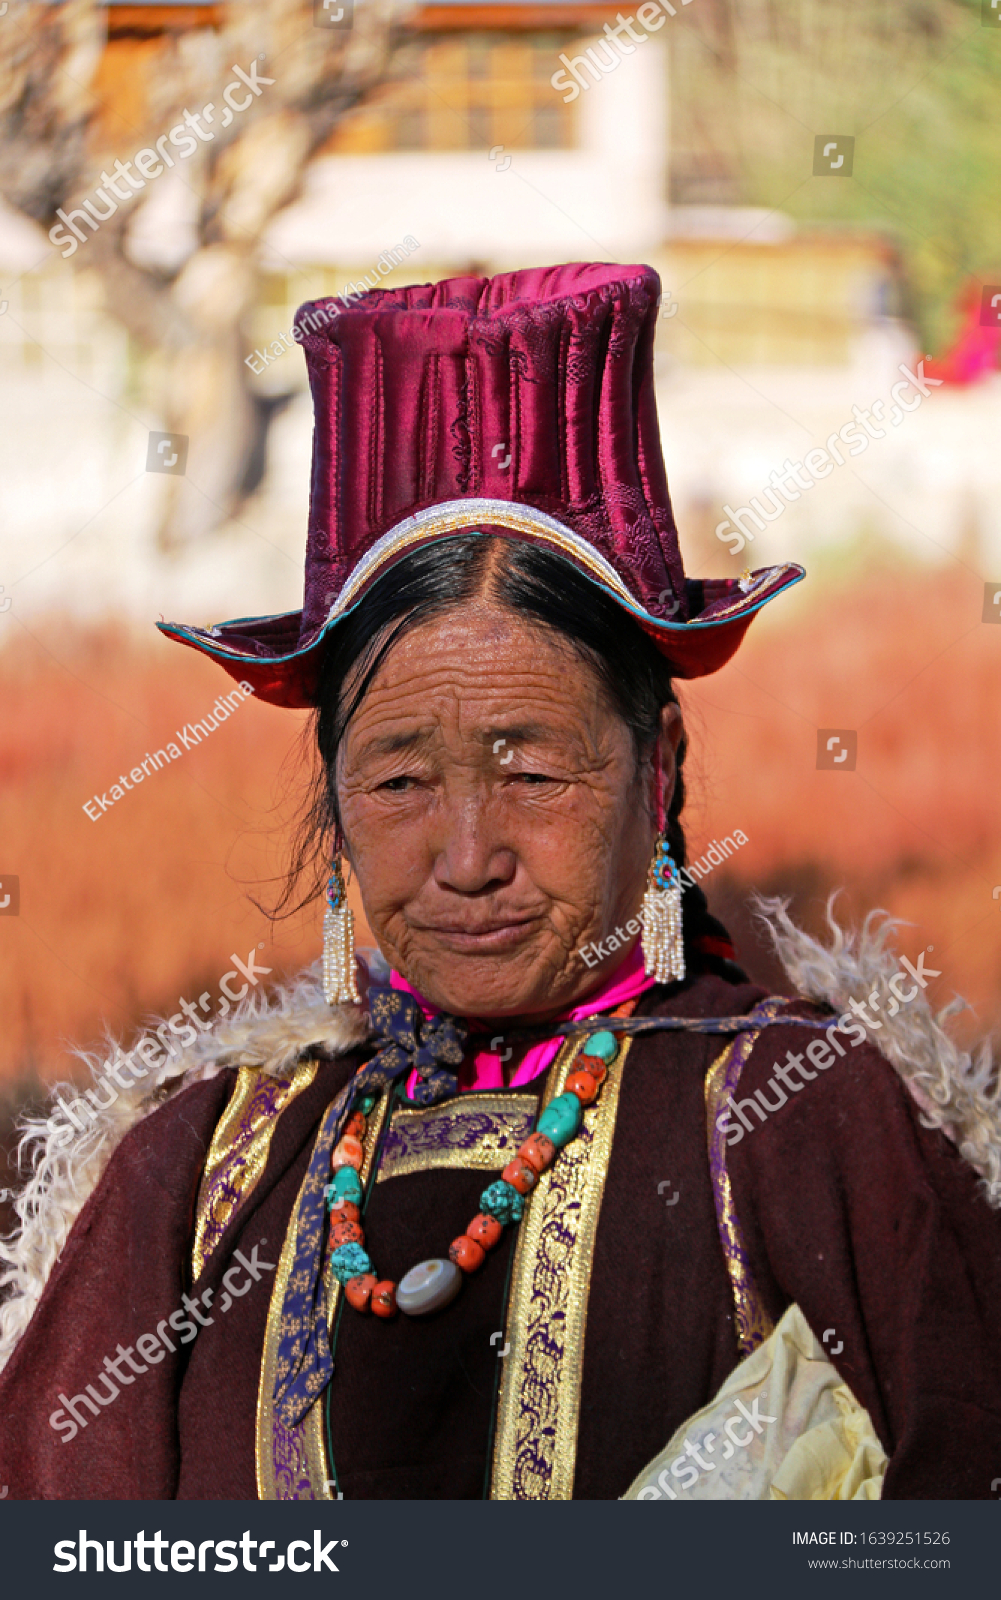 4,320 Ladakh clothes Images, Stock Photos & Vectors | Shutterstock